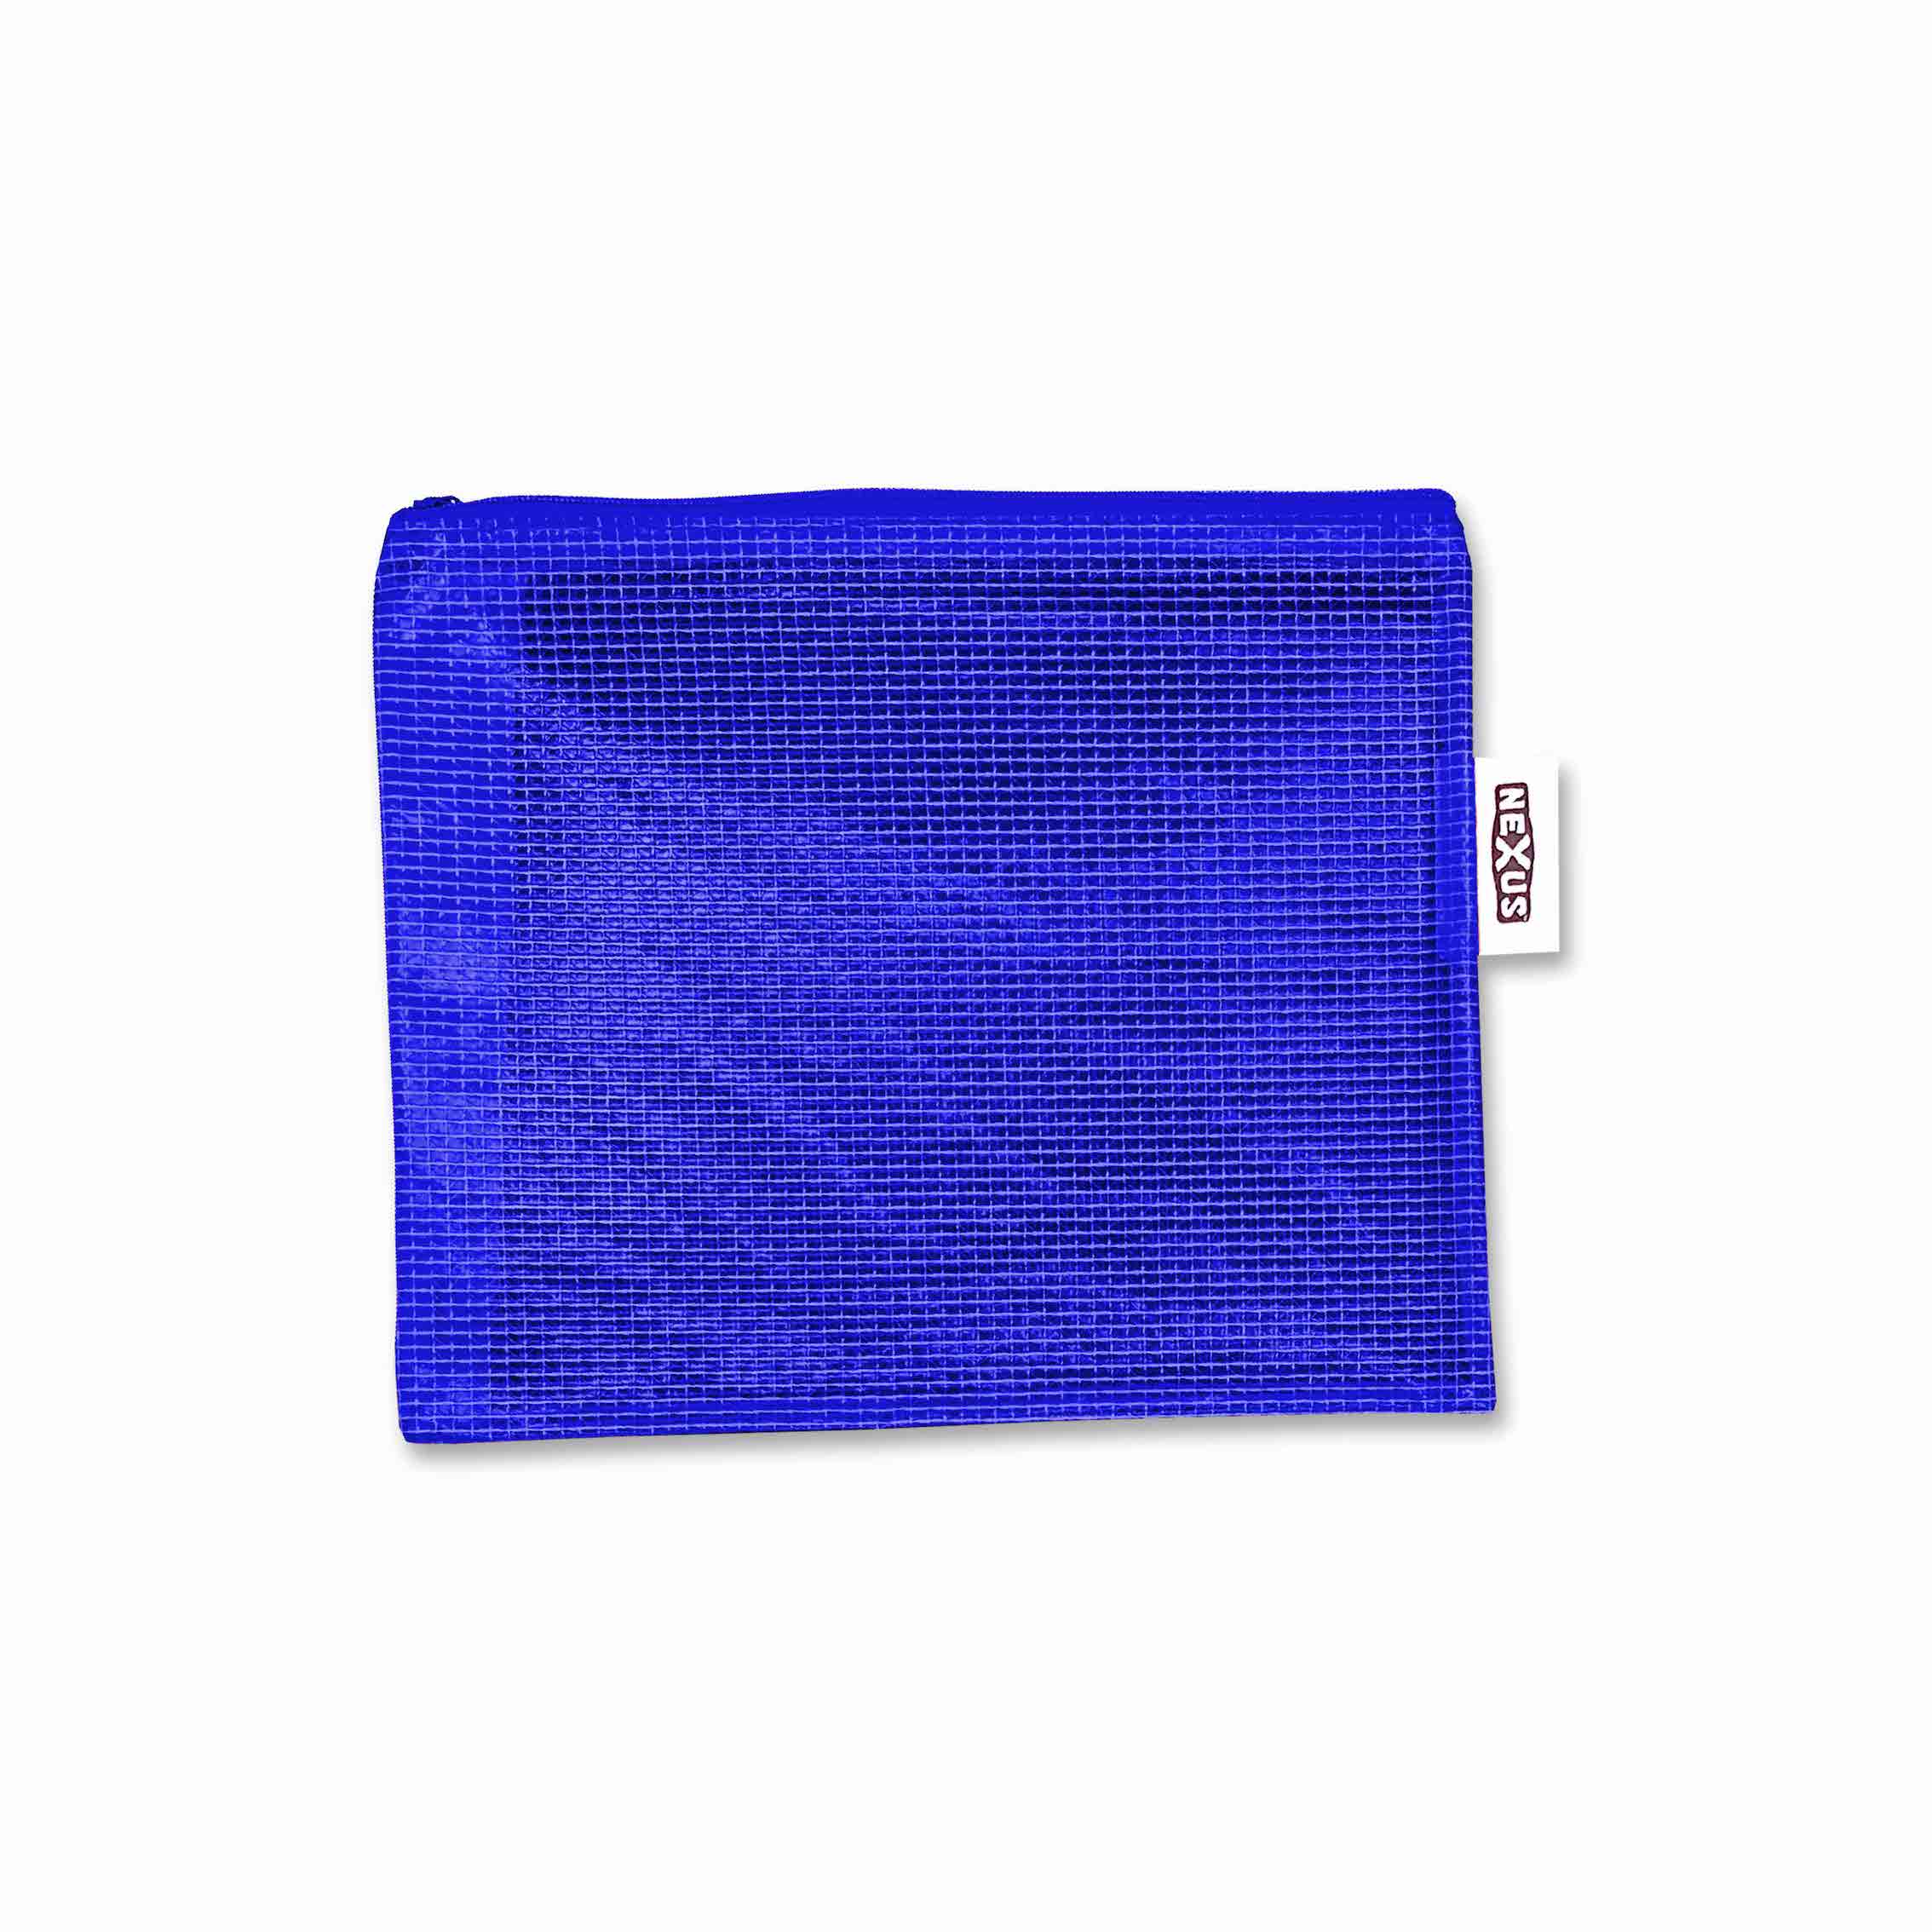 Essential Tough Kit Bag 18cm x 22 cm Blue – 1 pc